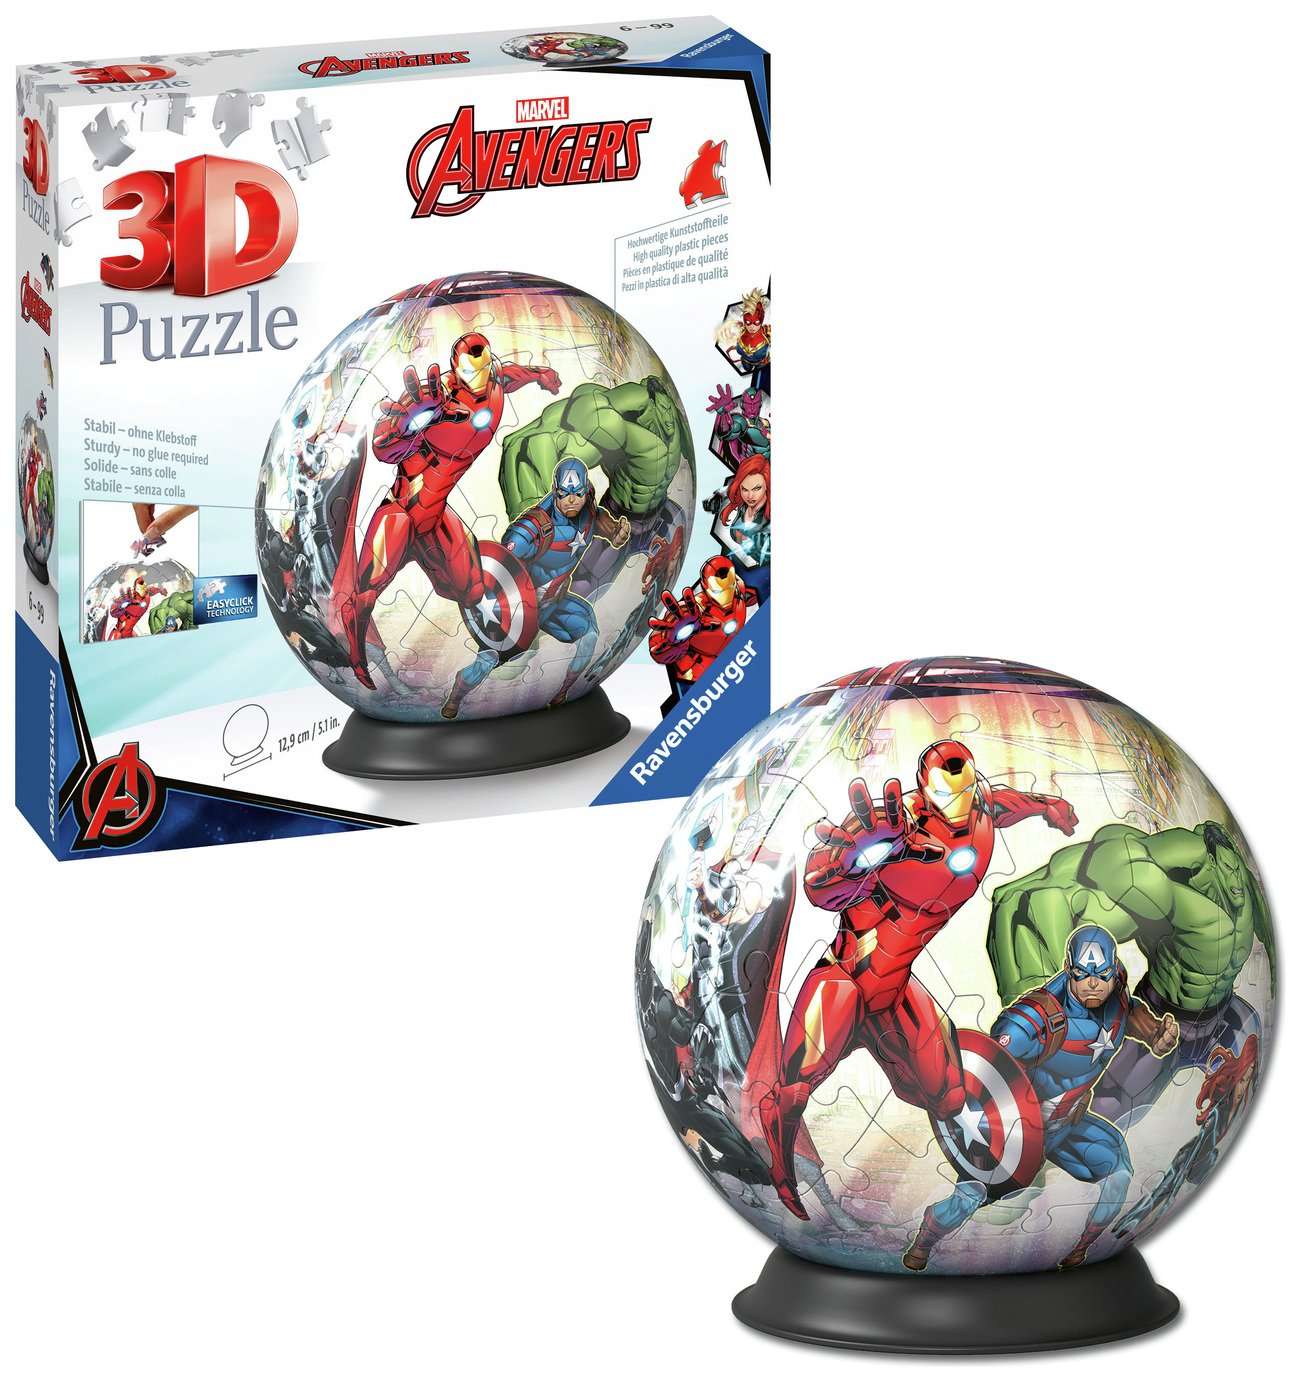 Avengers 3D Puzzle 72 Piece Puzzle